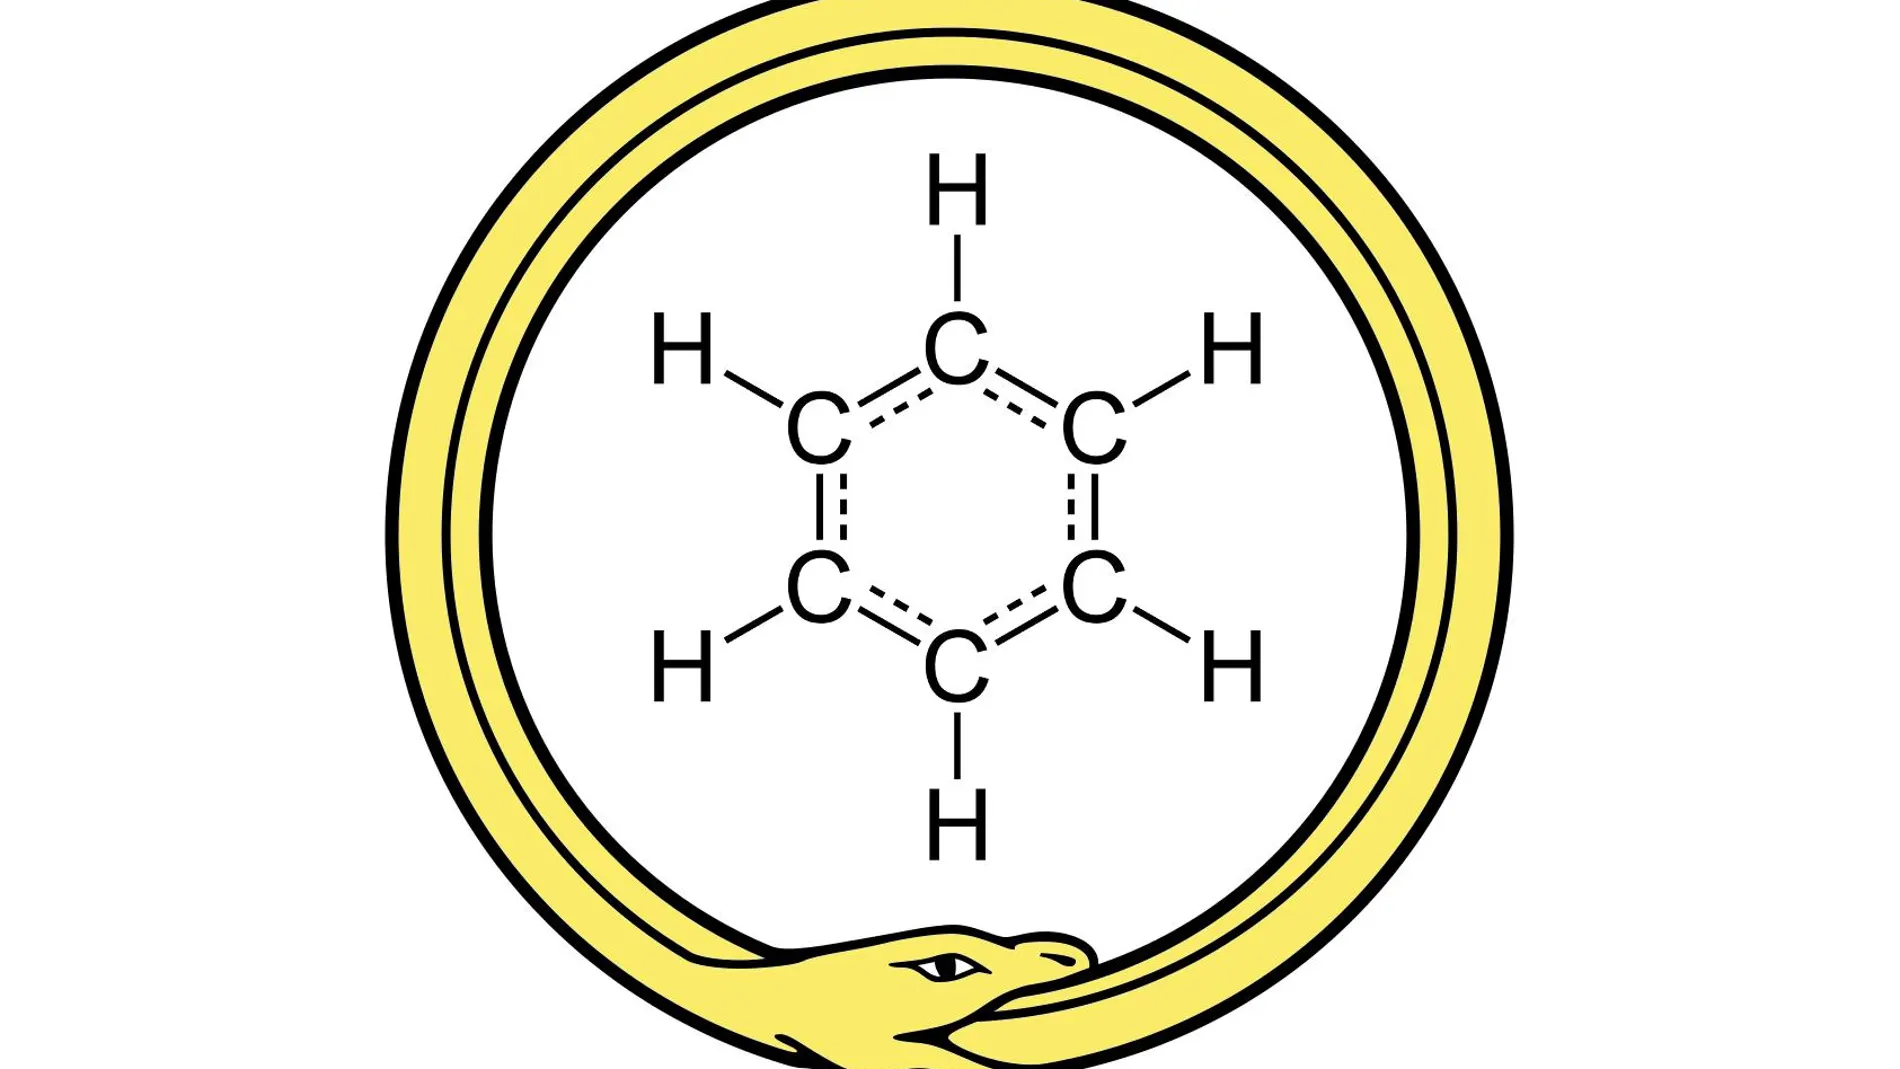 La estructura química del anillo de benceno rodeada de una serpiente que se muerde la cola.